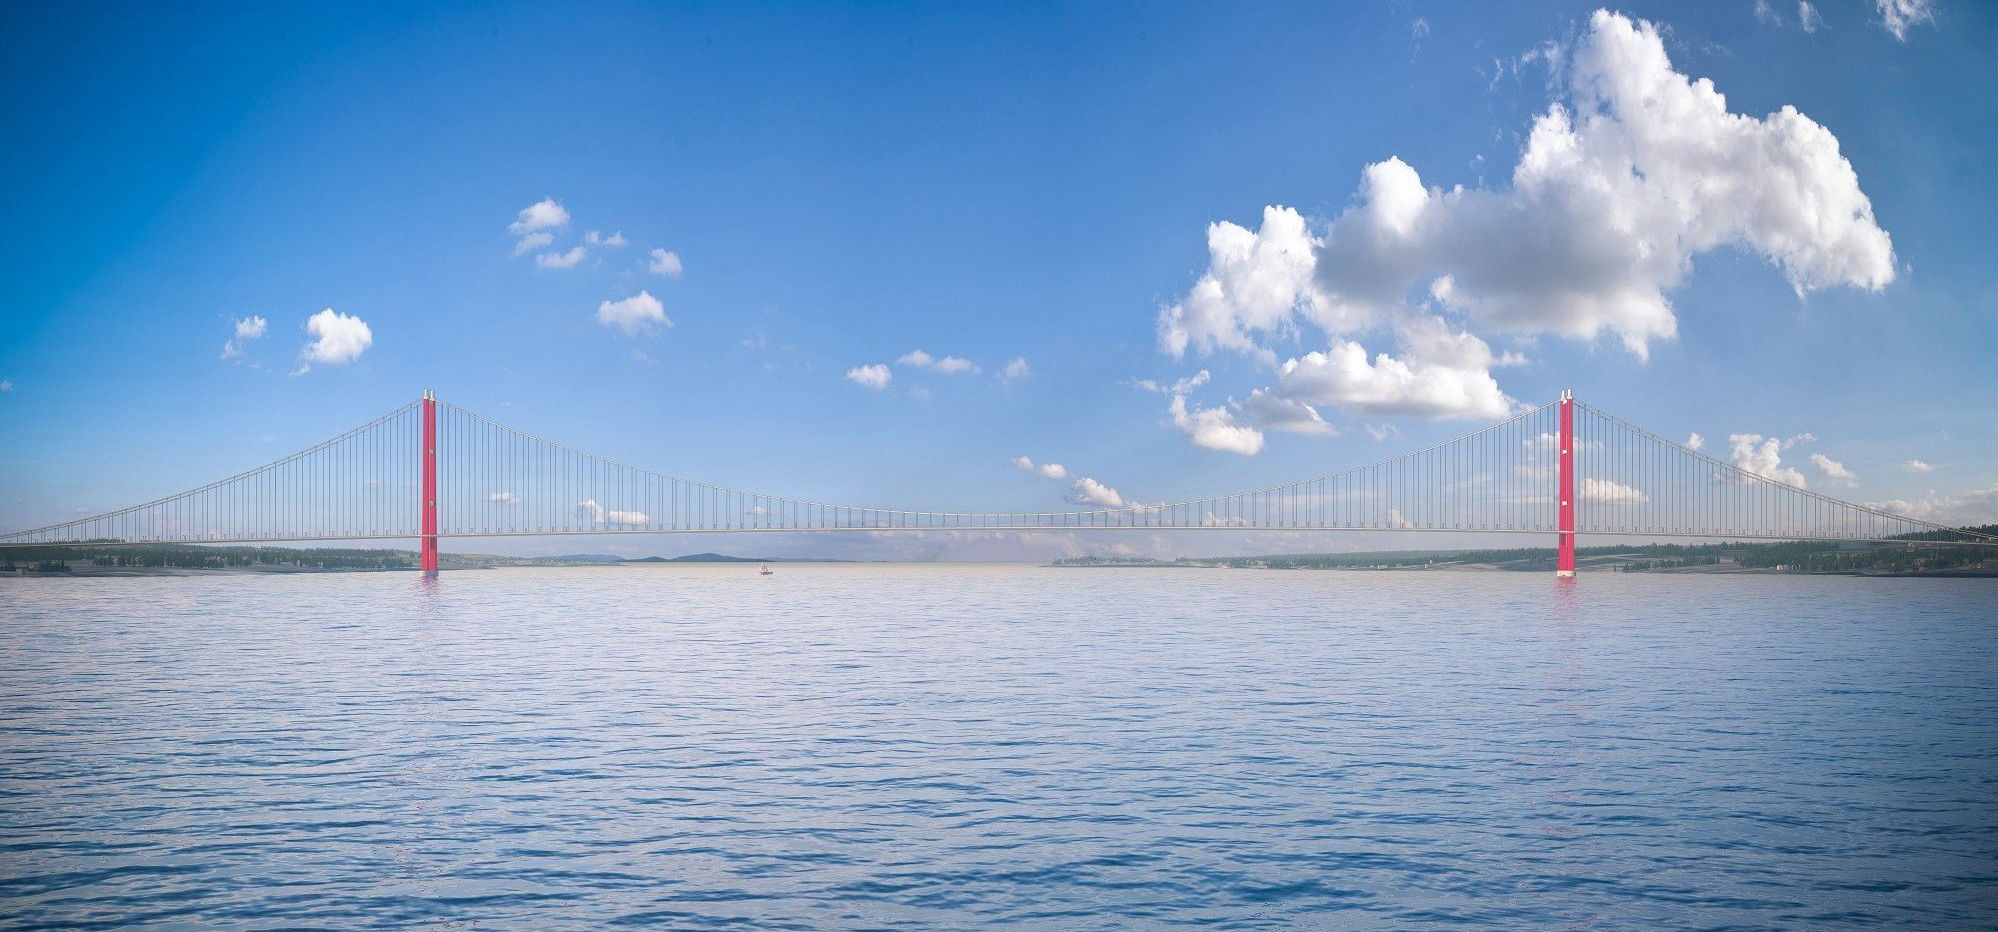 Završena izgradnja kula na najdužem visećem mostu na svijetu